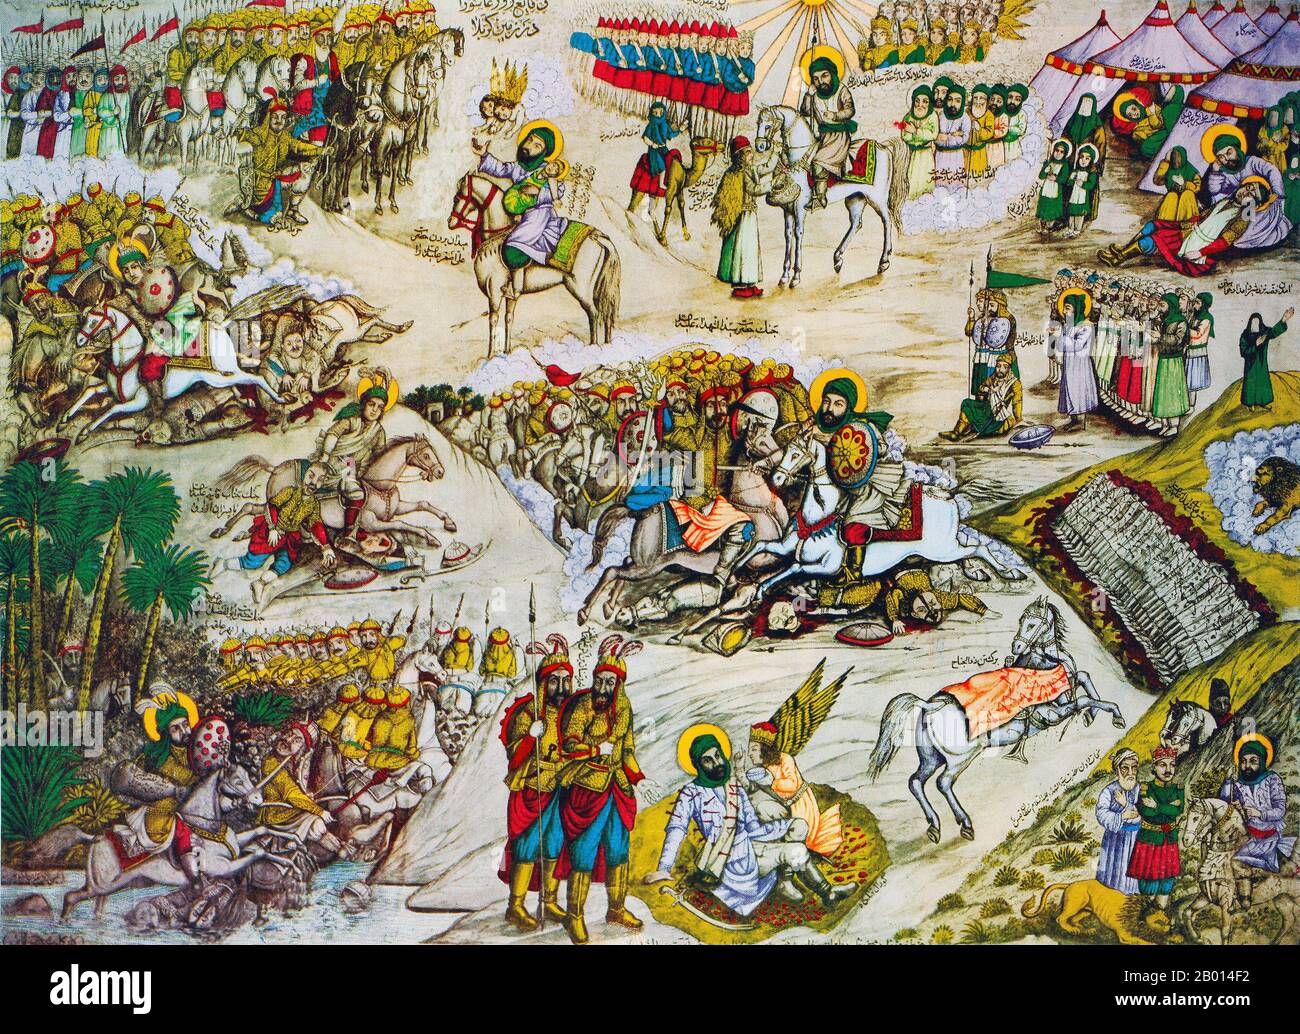 Irak: Moderne (20. Jahrhundert) Darstellung der Schlacht von Karbala, von zentraler Bedeutung für den schiitischen Islam, die 680 ausgetragen wurde. In der Schlacht von Karbala wurden die Anhänger von Ali, angeführt vom Enkel des Propheten Muhammad Husain, von den Truppen des umayyadischen Kalifen Yazid besiegt. Das Ereignis, das oft in populären Grafiken dargestellt wird, wird von den Schiiten verwendet, um die Rolle des Märtyrers zu erinnern, die sie im Laufe der Geschichte gespielt haben. Die gewöhnliche Chronologie wurde in diesem Druck aufgehoben. Mehrere Episoden aus der Schlacht werden gleichzeitig aufgeführt. Stockfoto